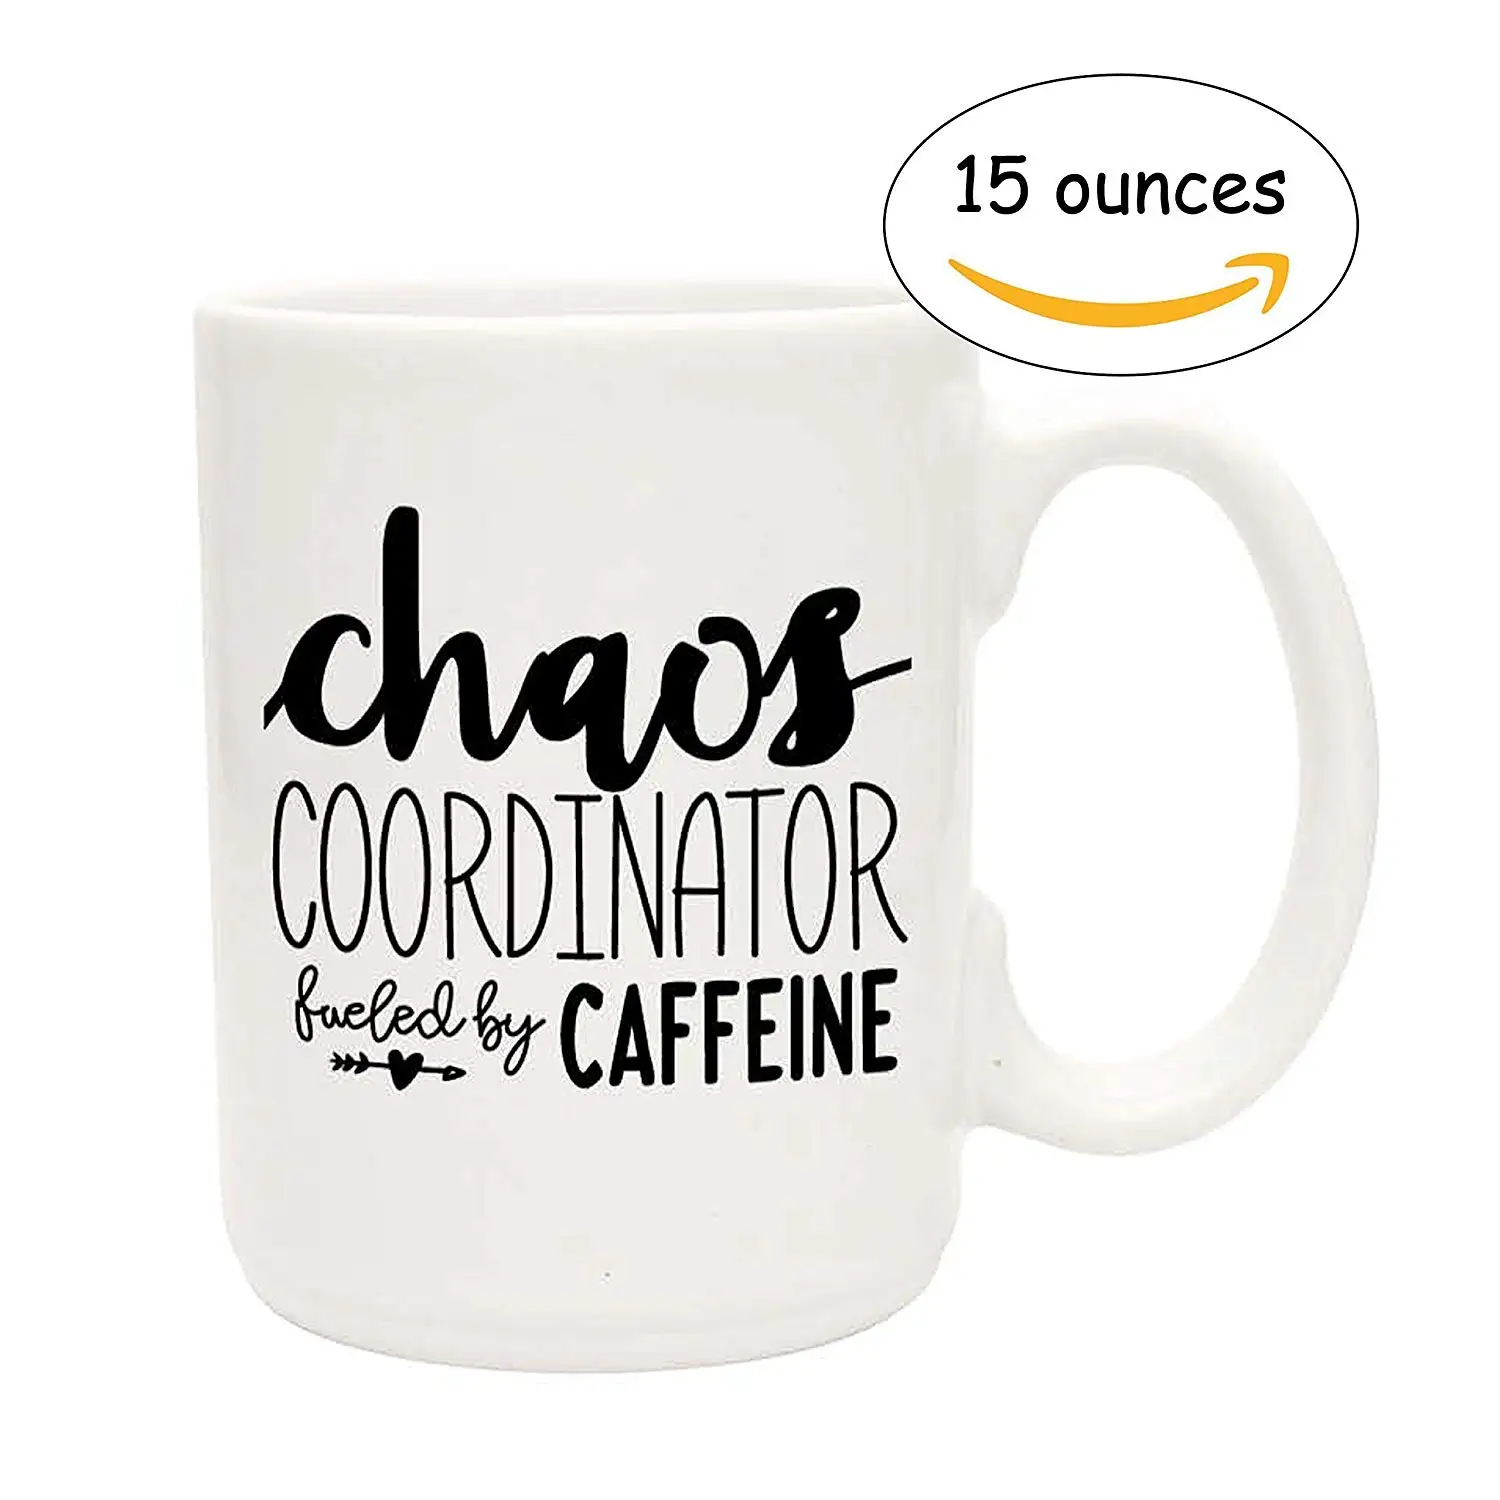 Buy Funny Coffee Mug Fun Mugs And Fun Gag T For Coworker